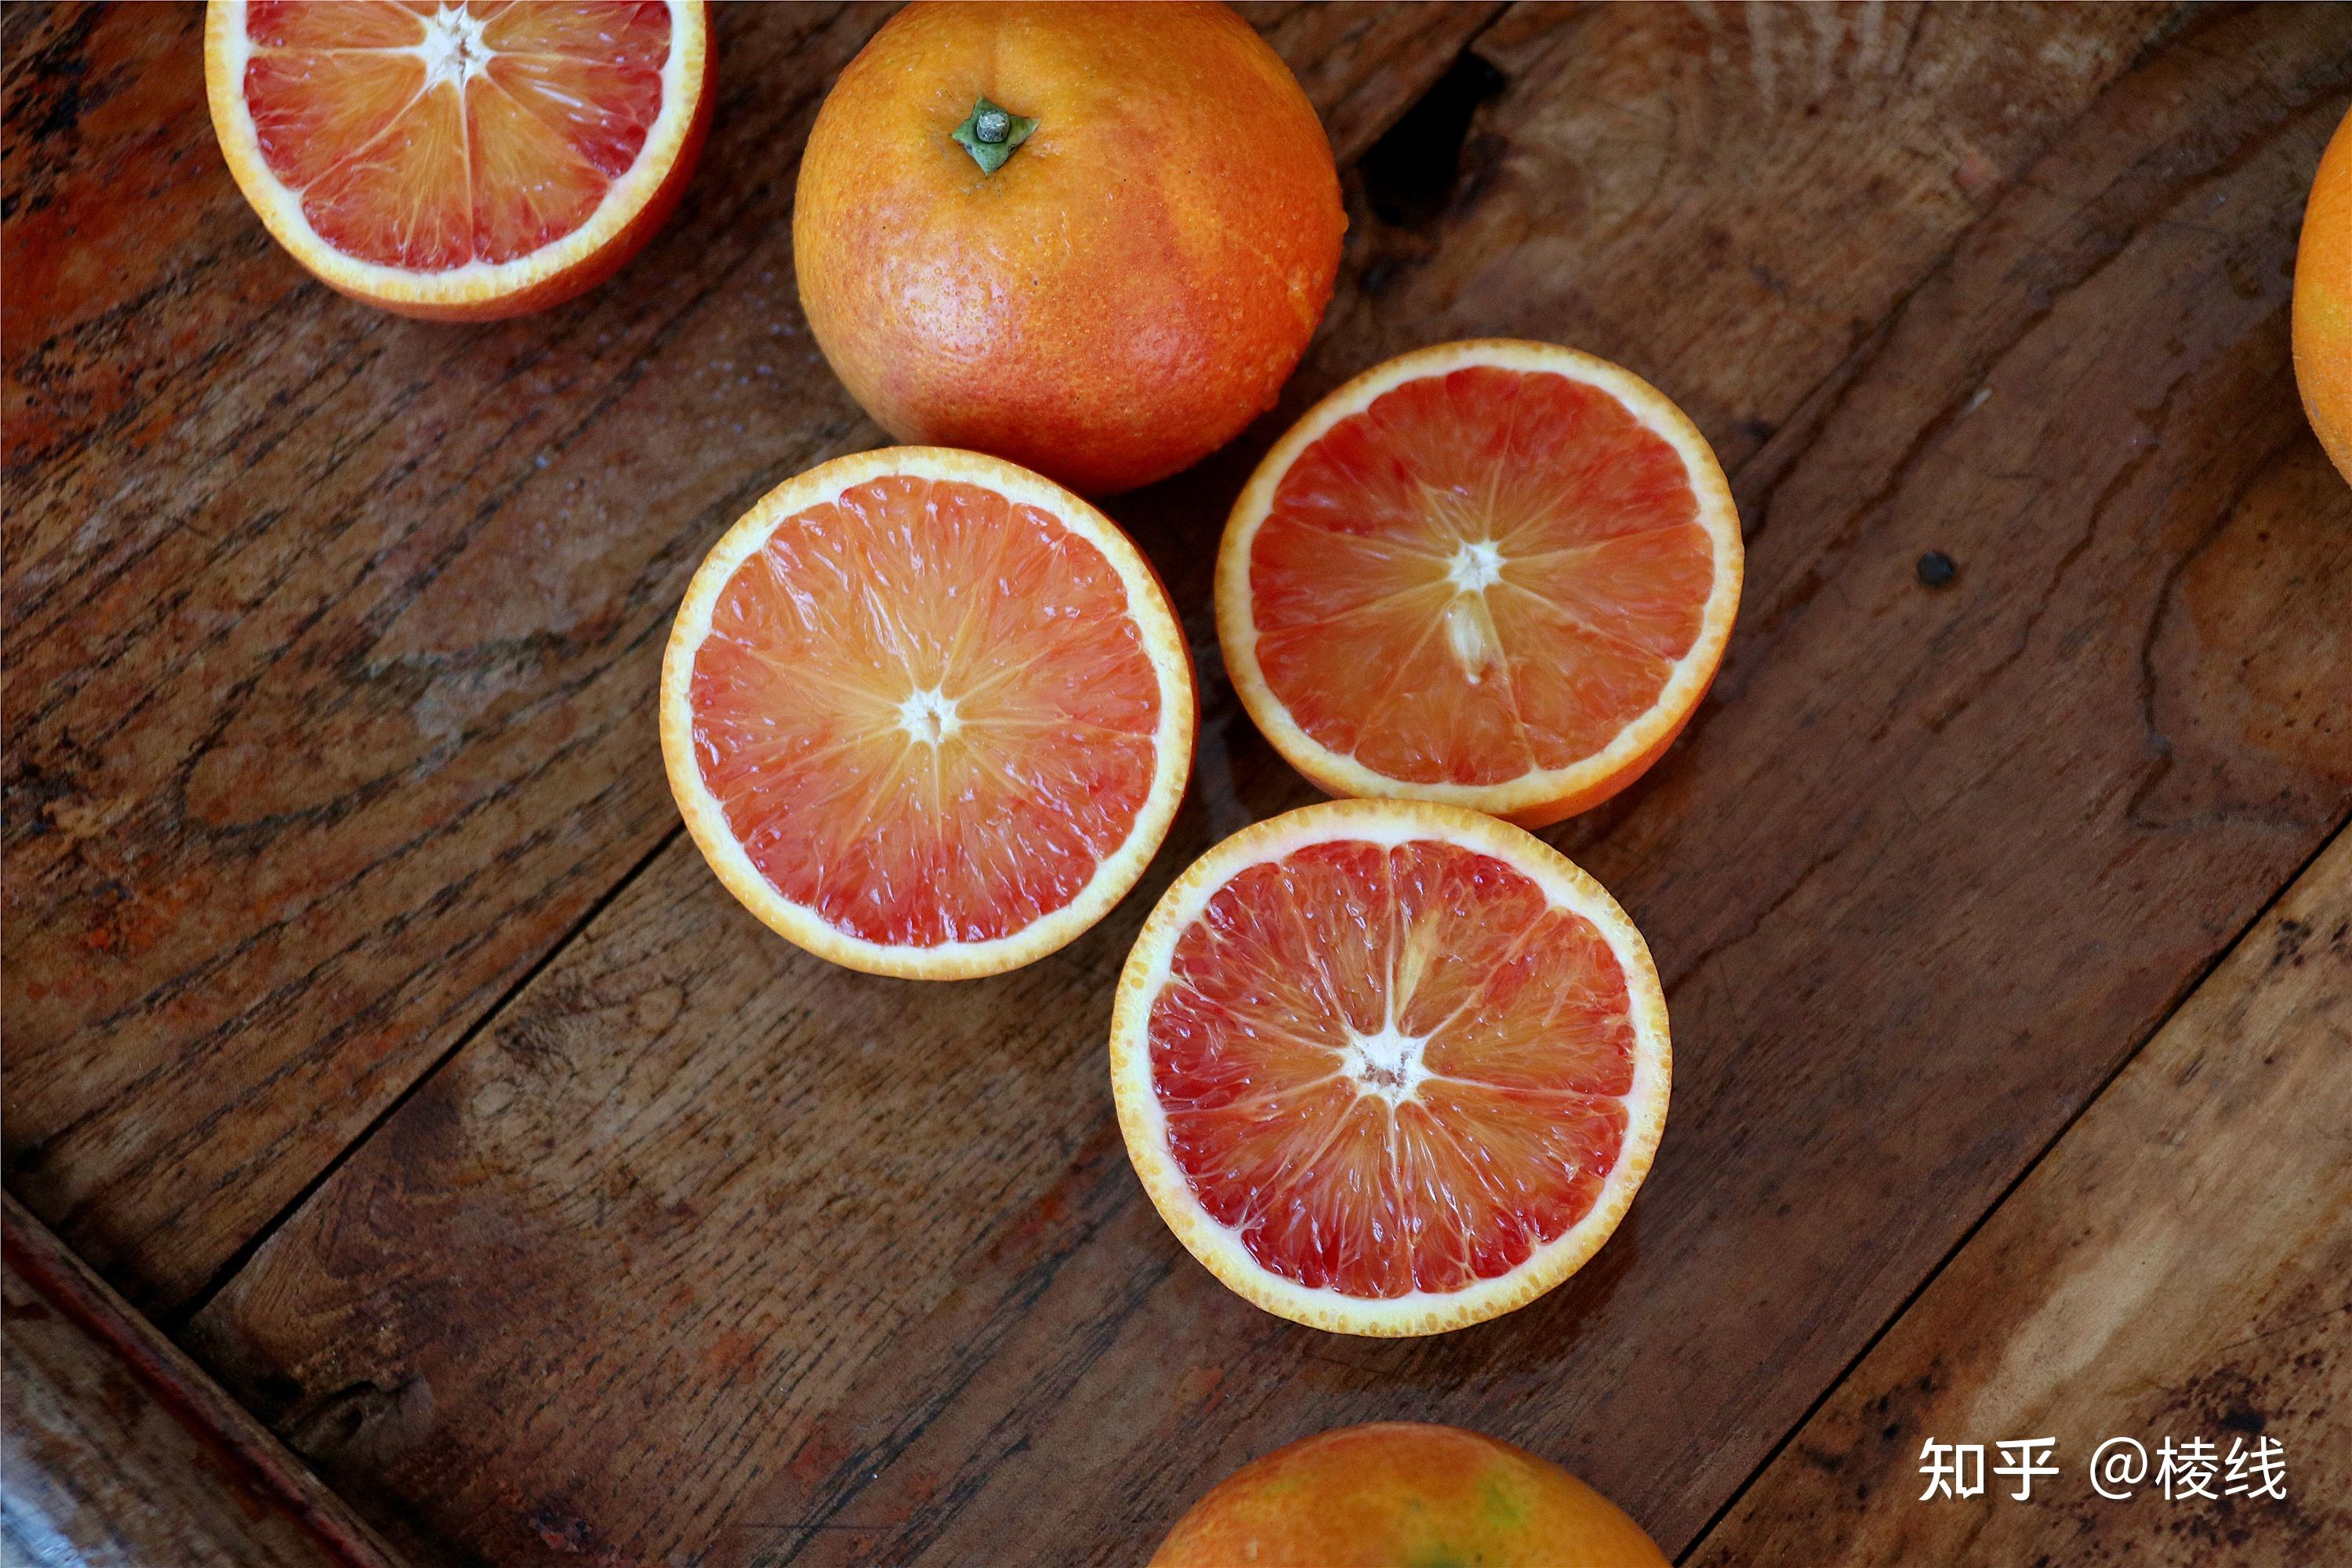 当你切开一个血橙时,你会看到拥有天然红色的果肉,果肉晶莹剔透,粒粒